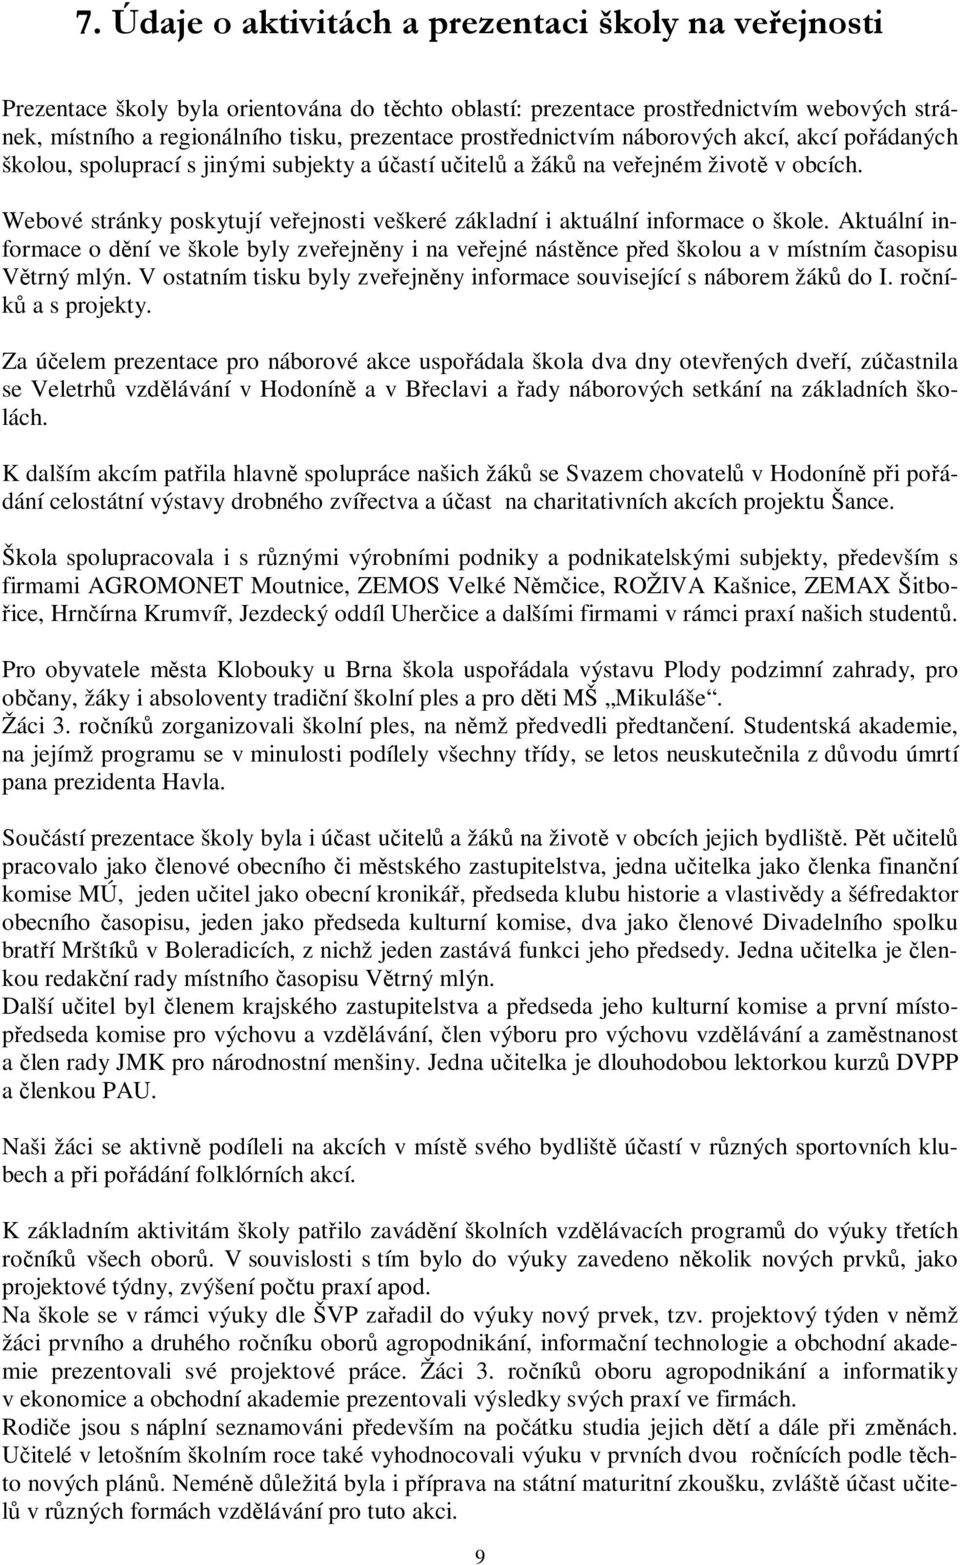 Název školy: Městská střední odborná škola, Klobouky u Brna, nám. Míru 6,  příspěvková - PDF Stažení zdarma